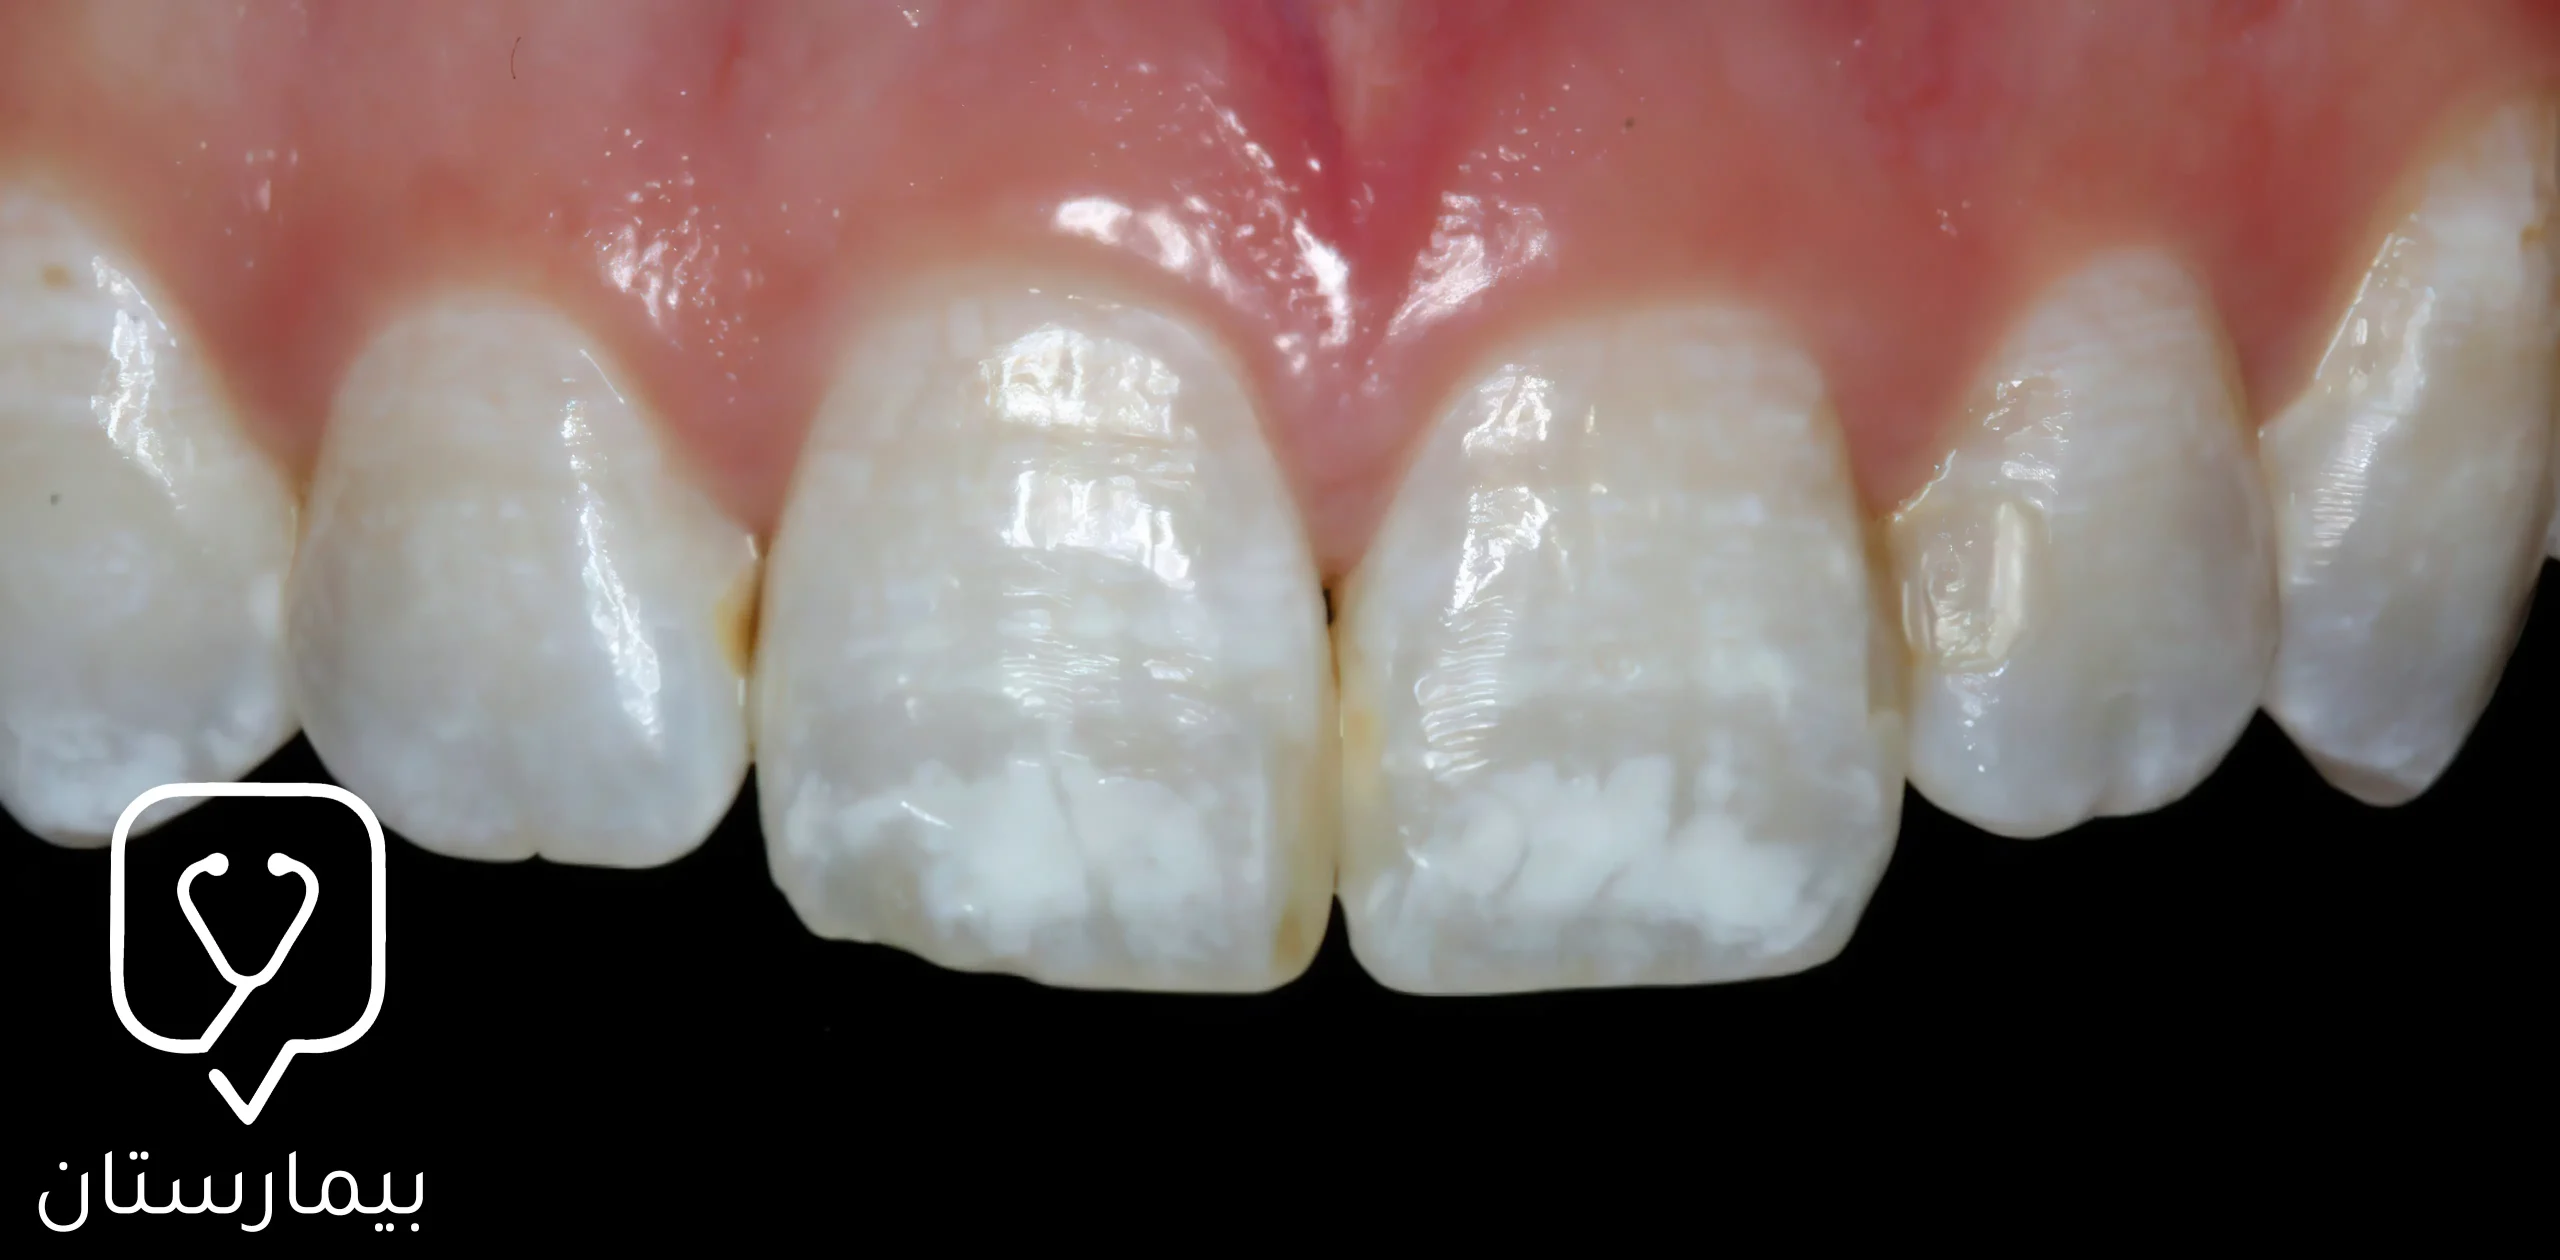 Aşırı florür alımı ve yanlış kullanımı dental florozis adı verilen beyaz pigmentasyona neden olabilir.